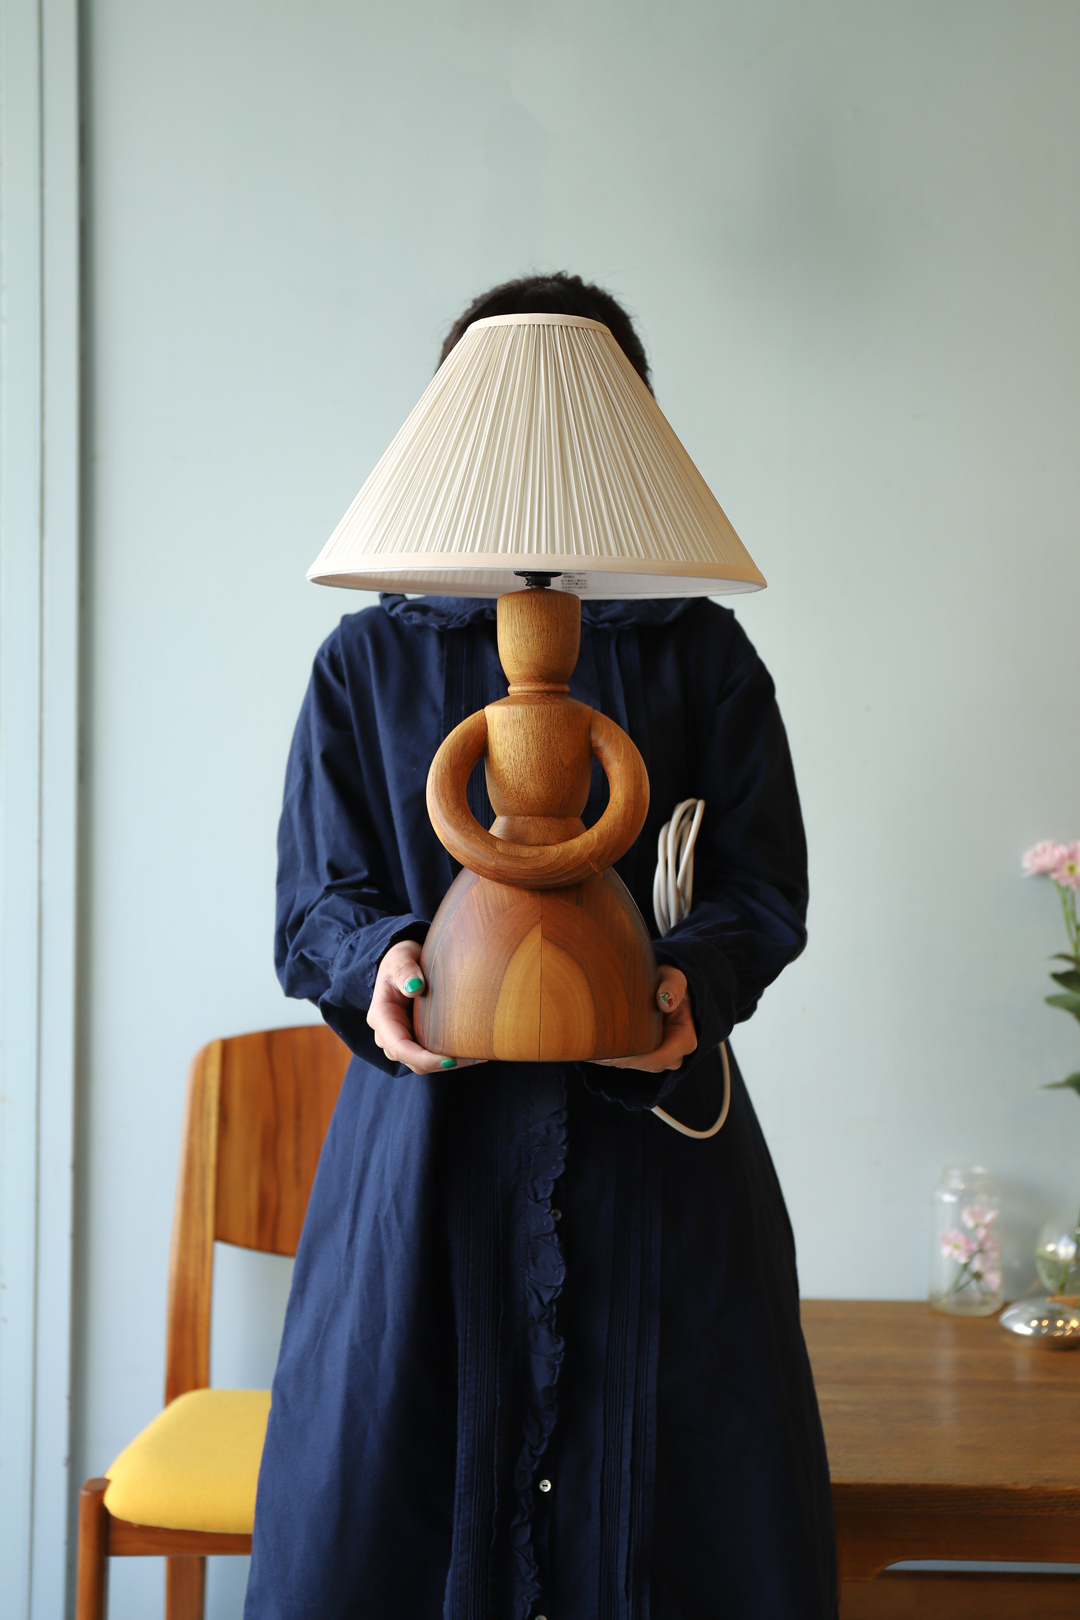 Danish Vintage Parquet Doll Table Lamp/デンマークヴィンテージ ドールテーブルランプ 照明 寄木細工 パーケット 無垢材 北欧インテリア